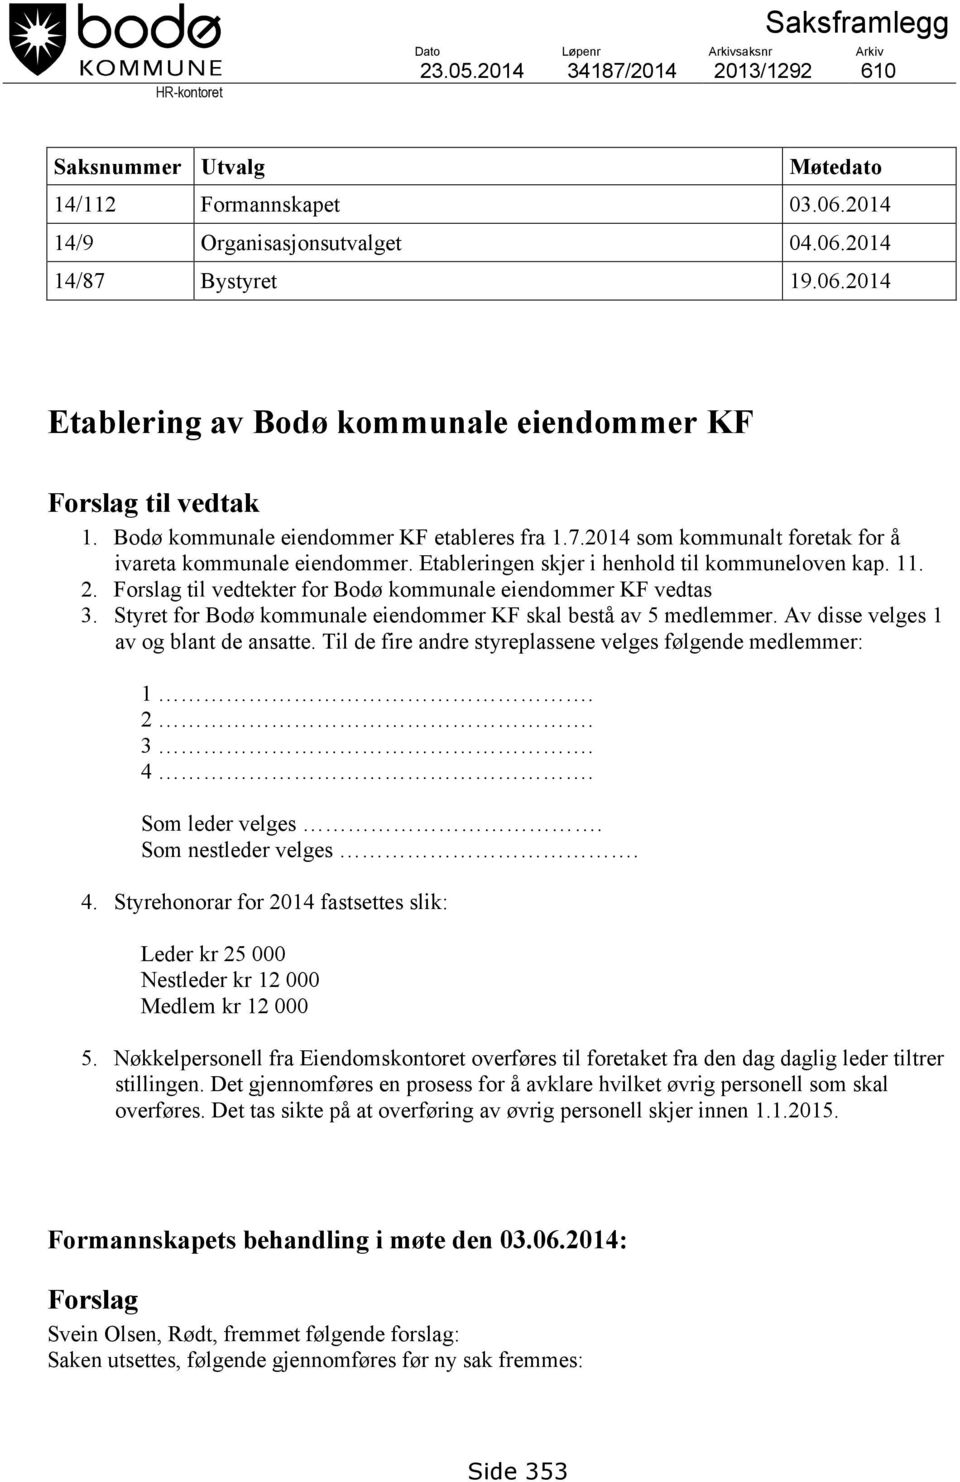 Etableringen skjer i henhold til kommuneloven kap. 11. 2. Forslag til vedtekter for Bodø kommunale eiendommer KF vedtas 3. Styret for Bodø kommunale eiendommer KF skal bestå av 5 medlemmer.